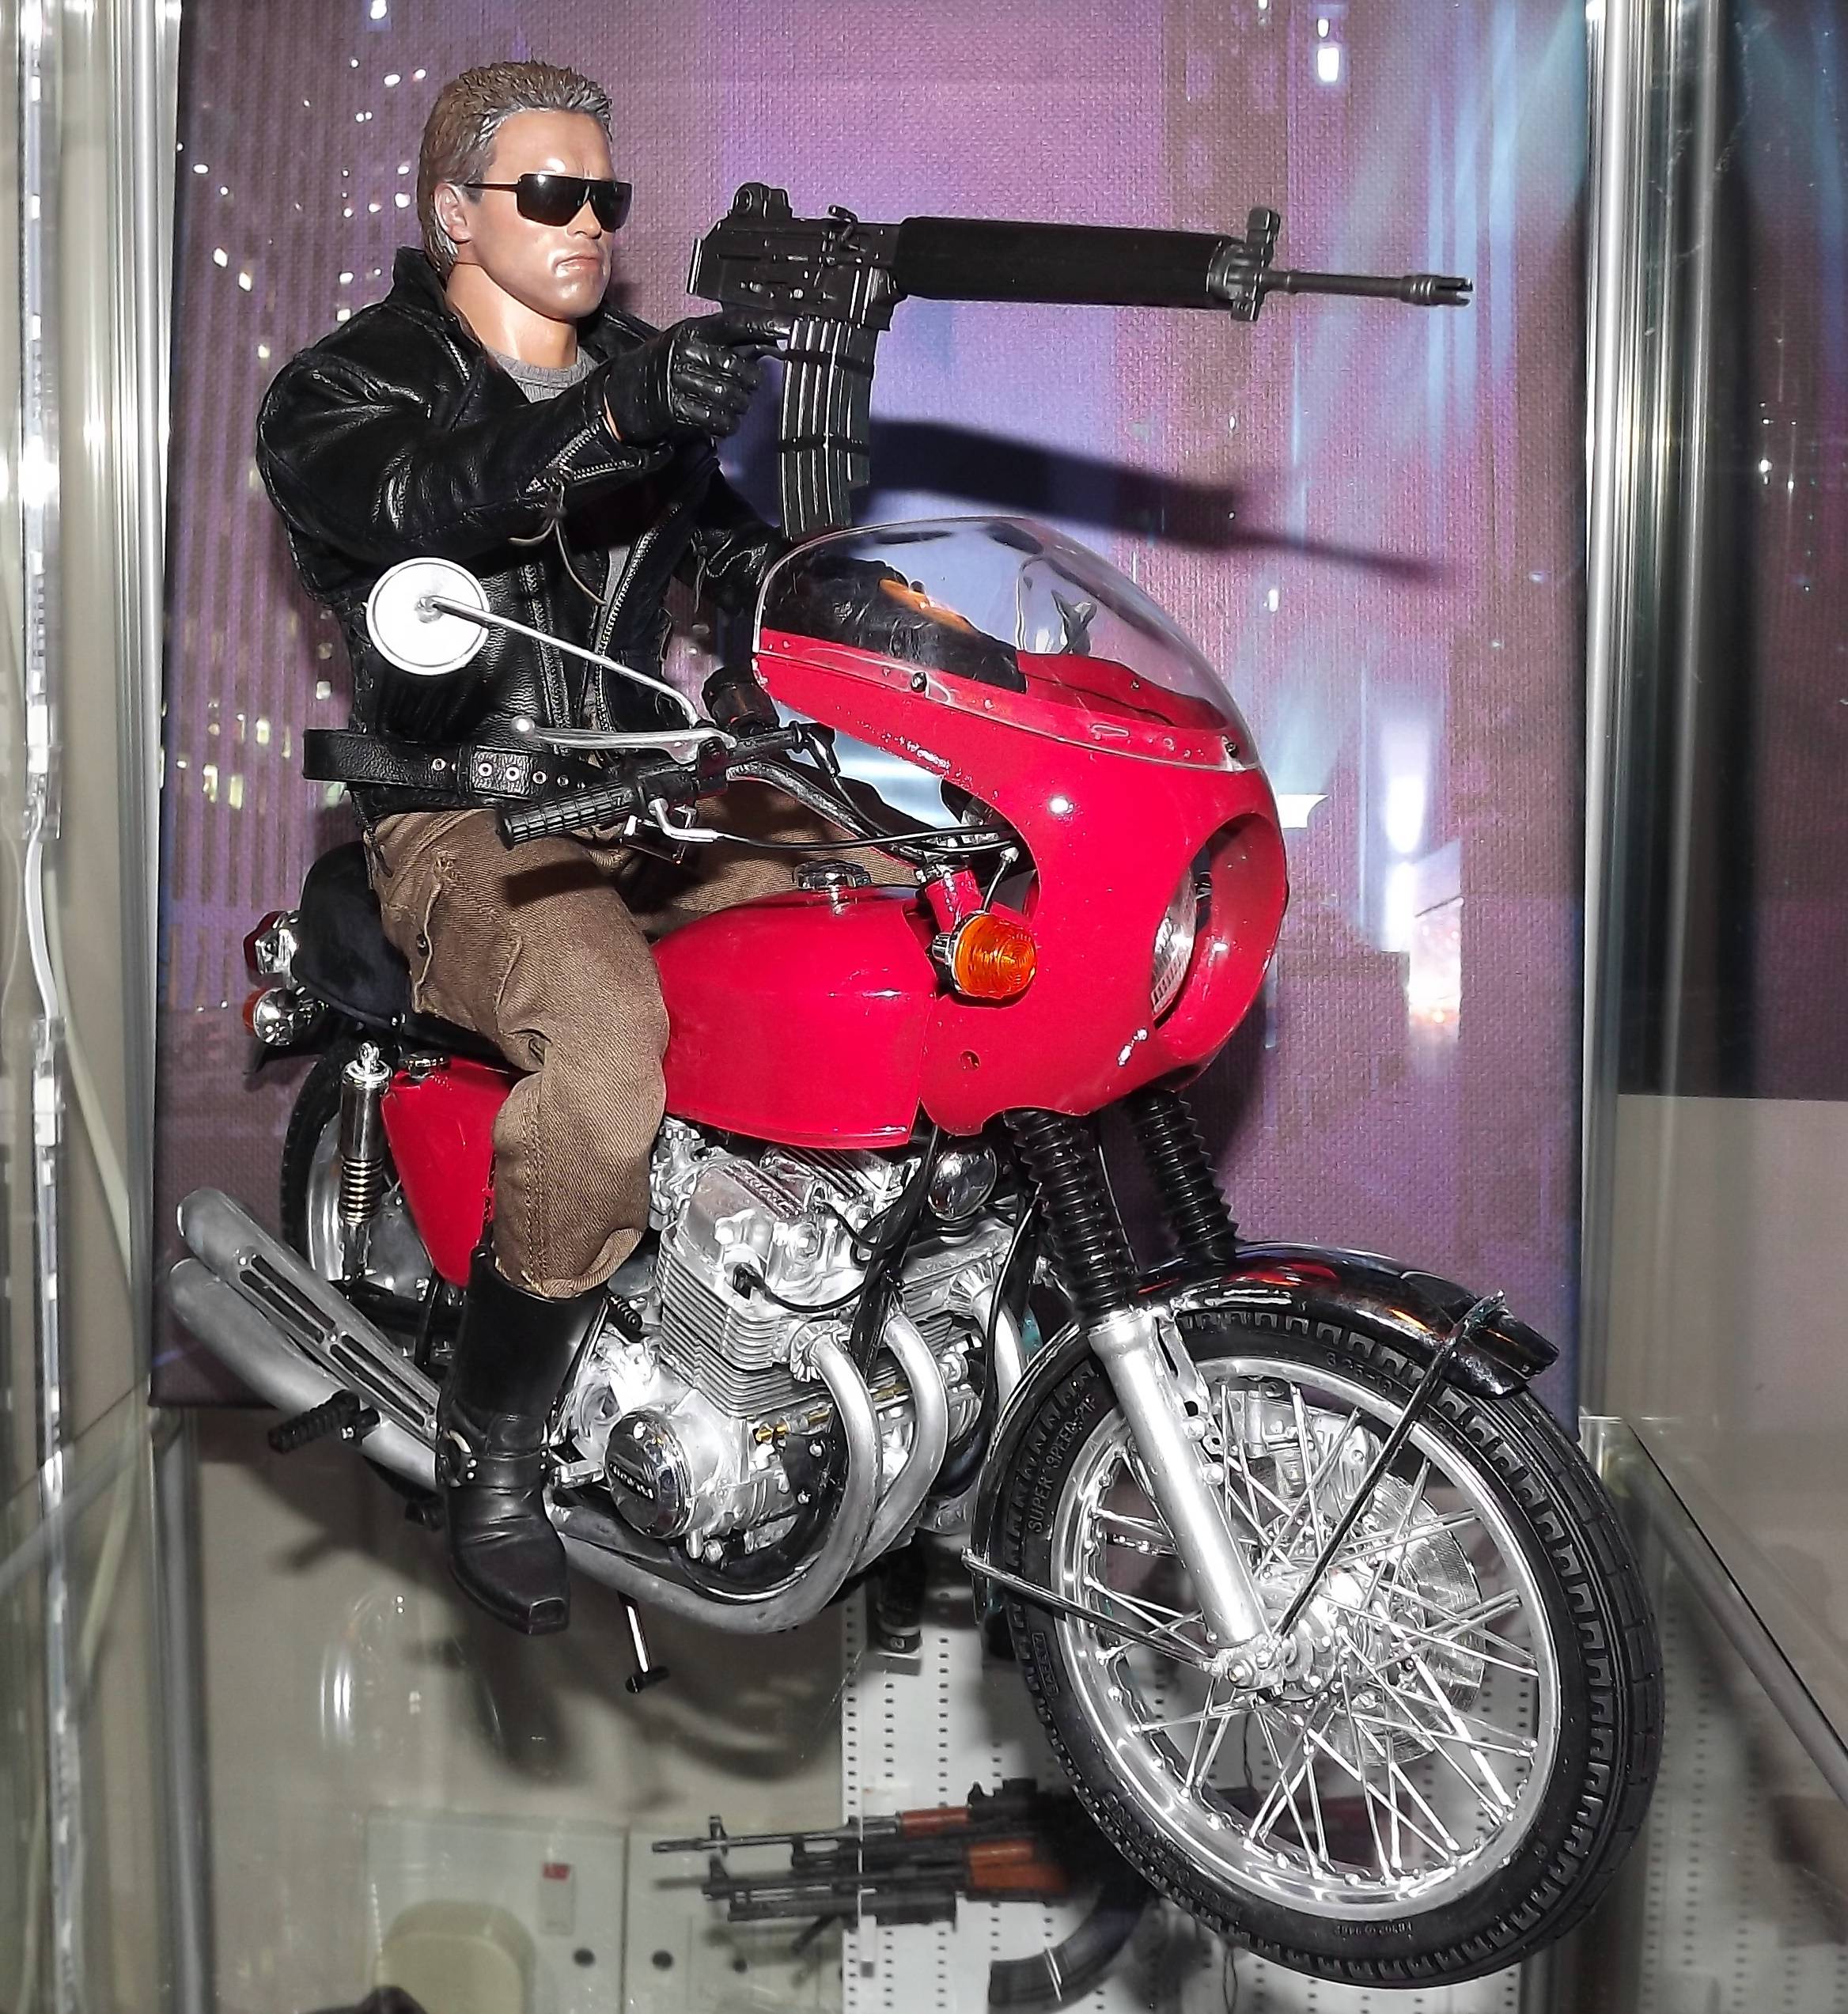  Honda CB750 Vier Modell Spielzeug aus dem ersten Terminator Film